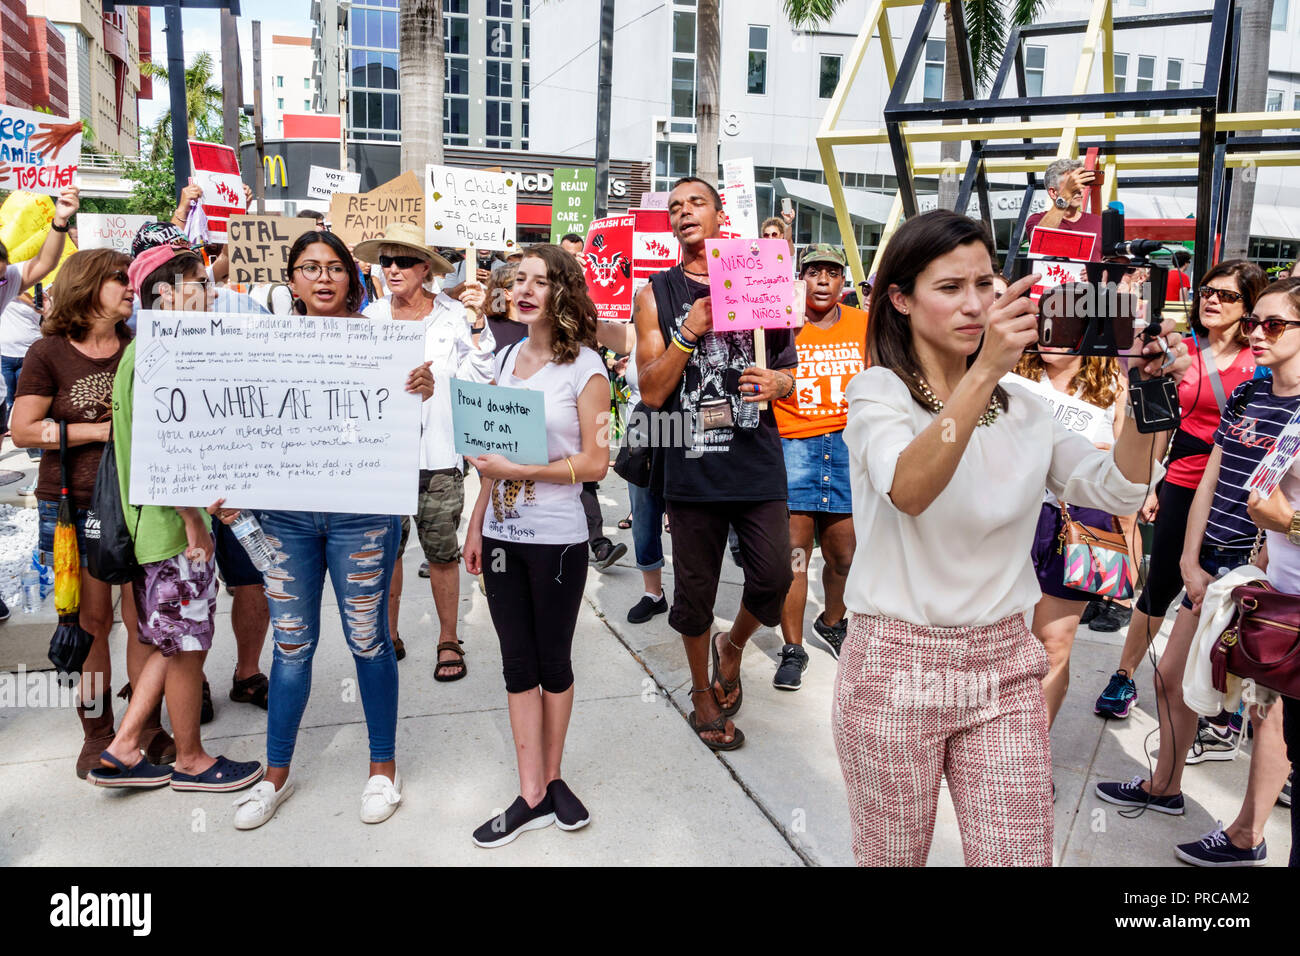 Miami Florida, Demonstration demonstriert Protest protestierend, Familien gehören zusammen Freie Kinder illegale Einwanderung, soziale Medien, mexikanische Grenze fa Stockfoto